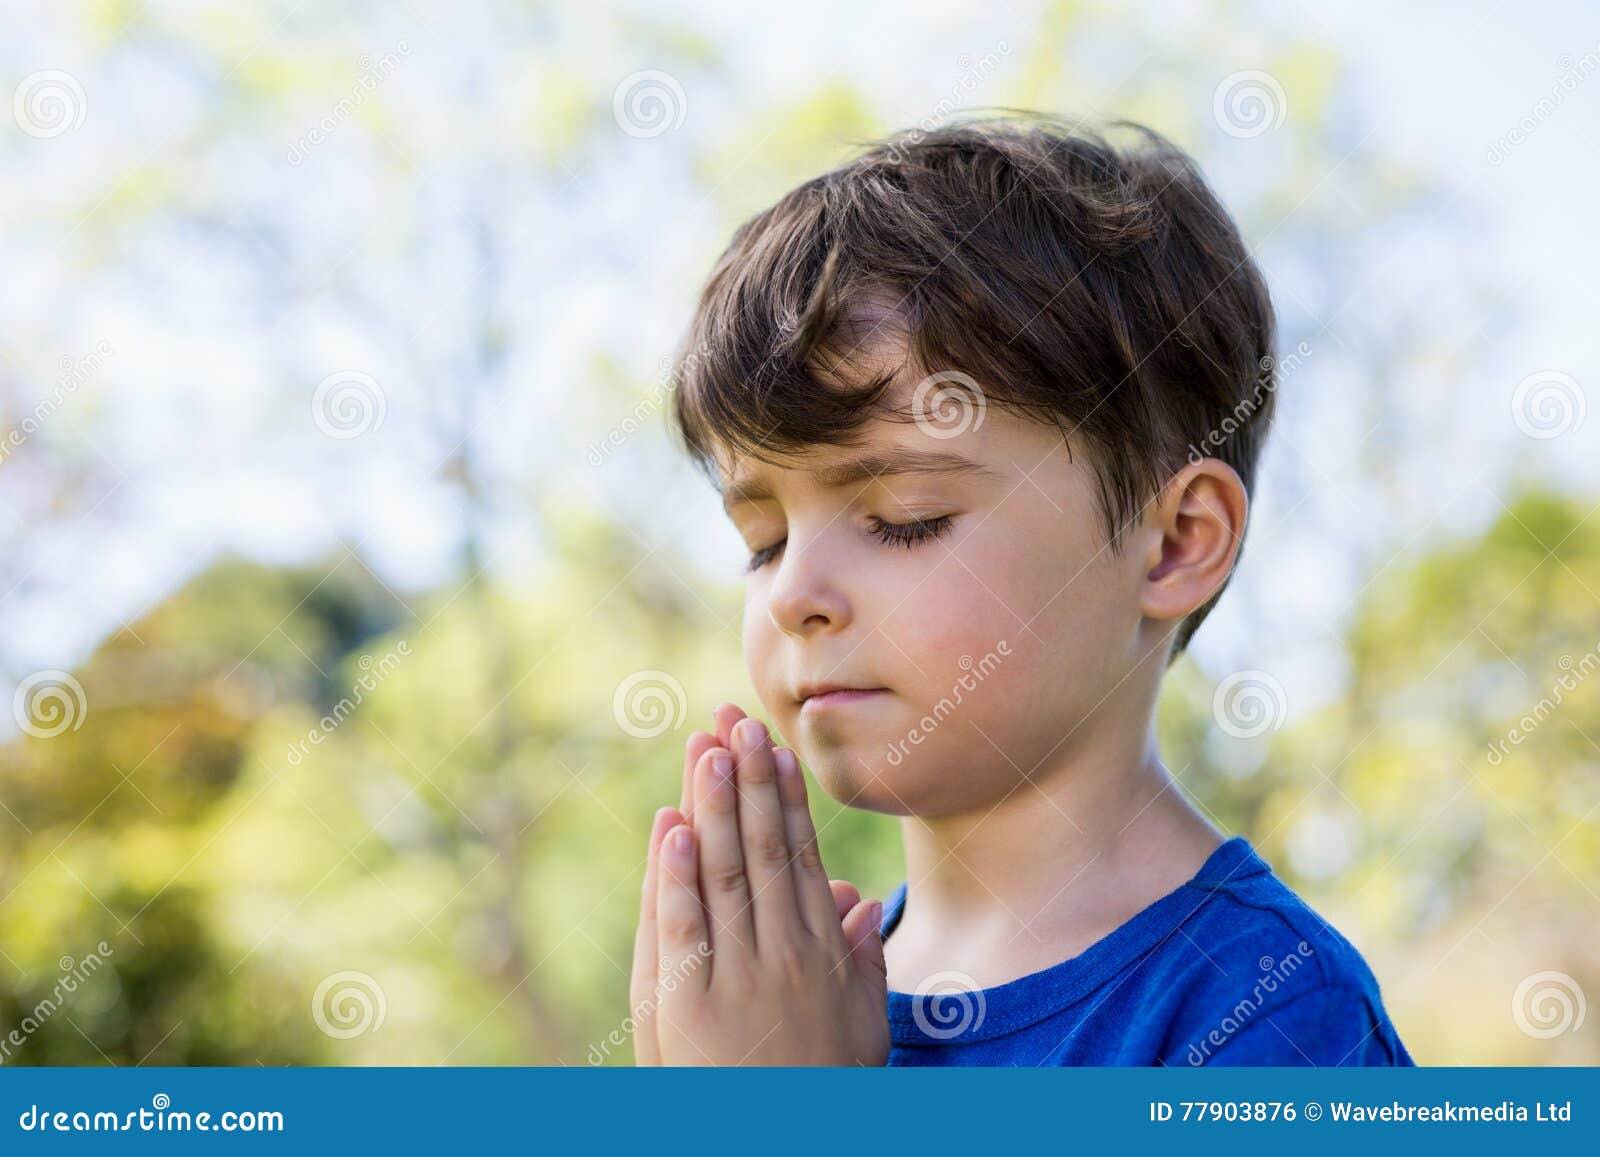 祈祷的男孩画象黑暗的背景的 库存照片. 图片 包括有 宽容, 雍容, 信任, 孩子, 少许, 基督徒, 和平 - 151296004